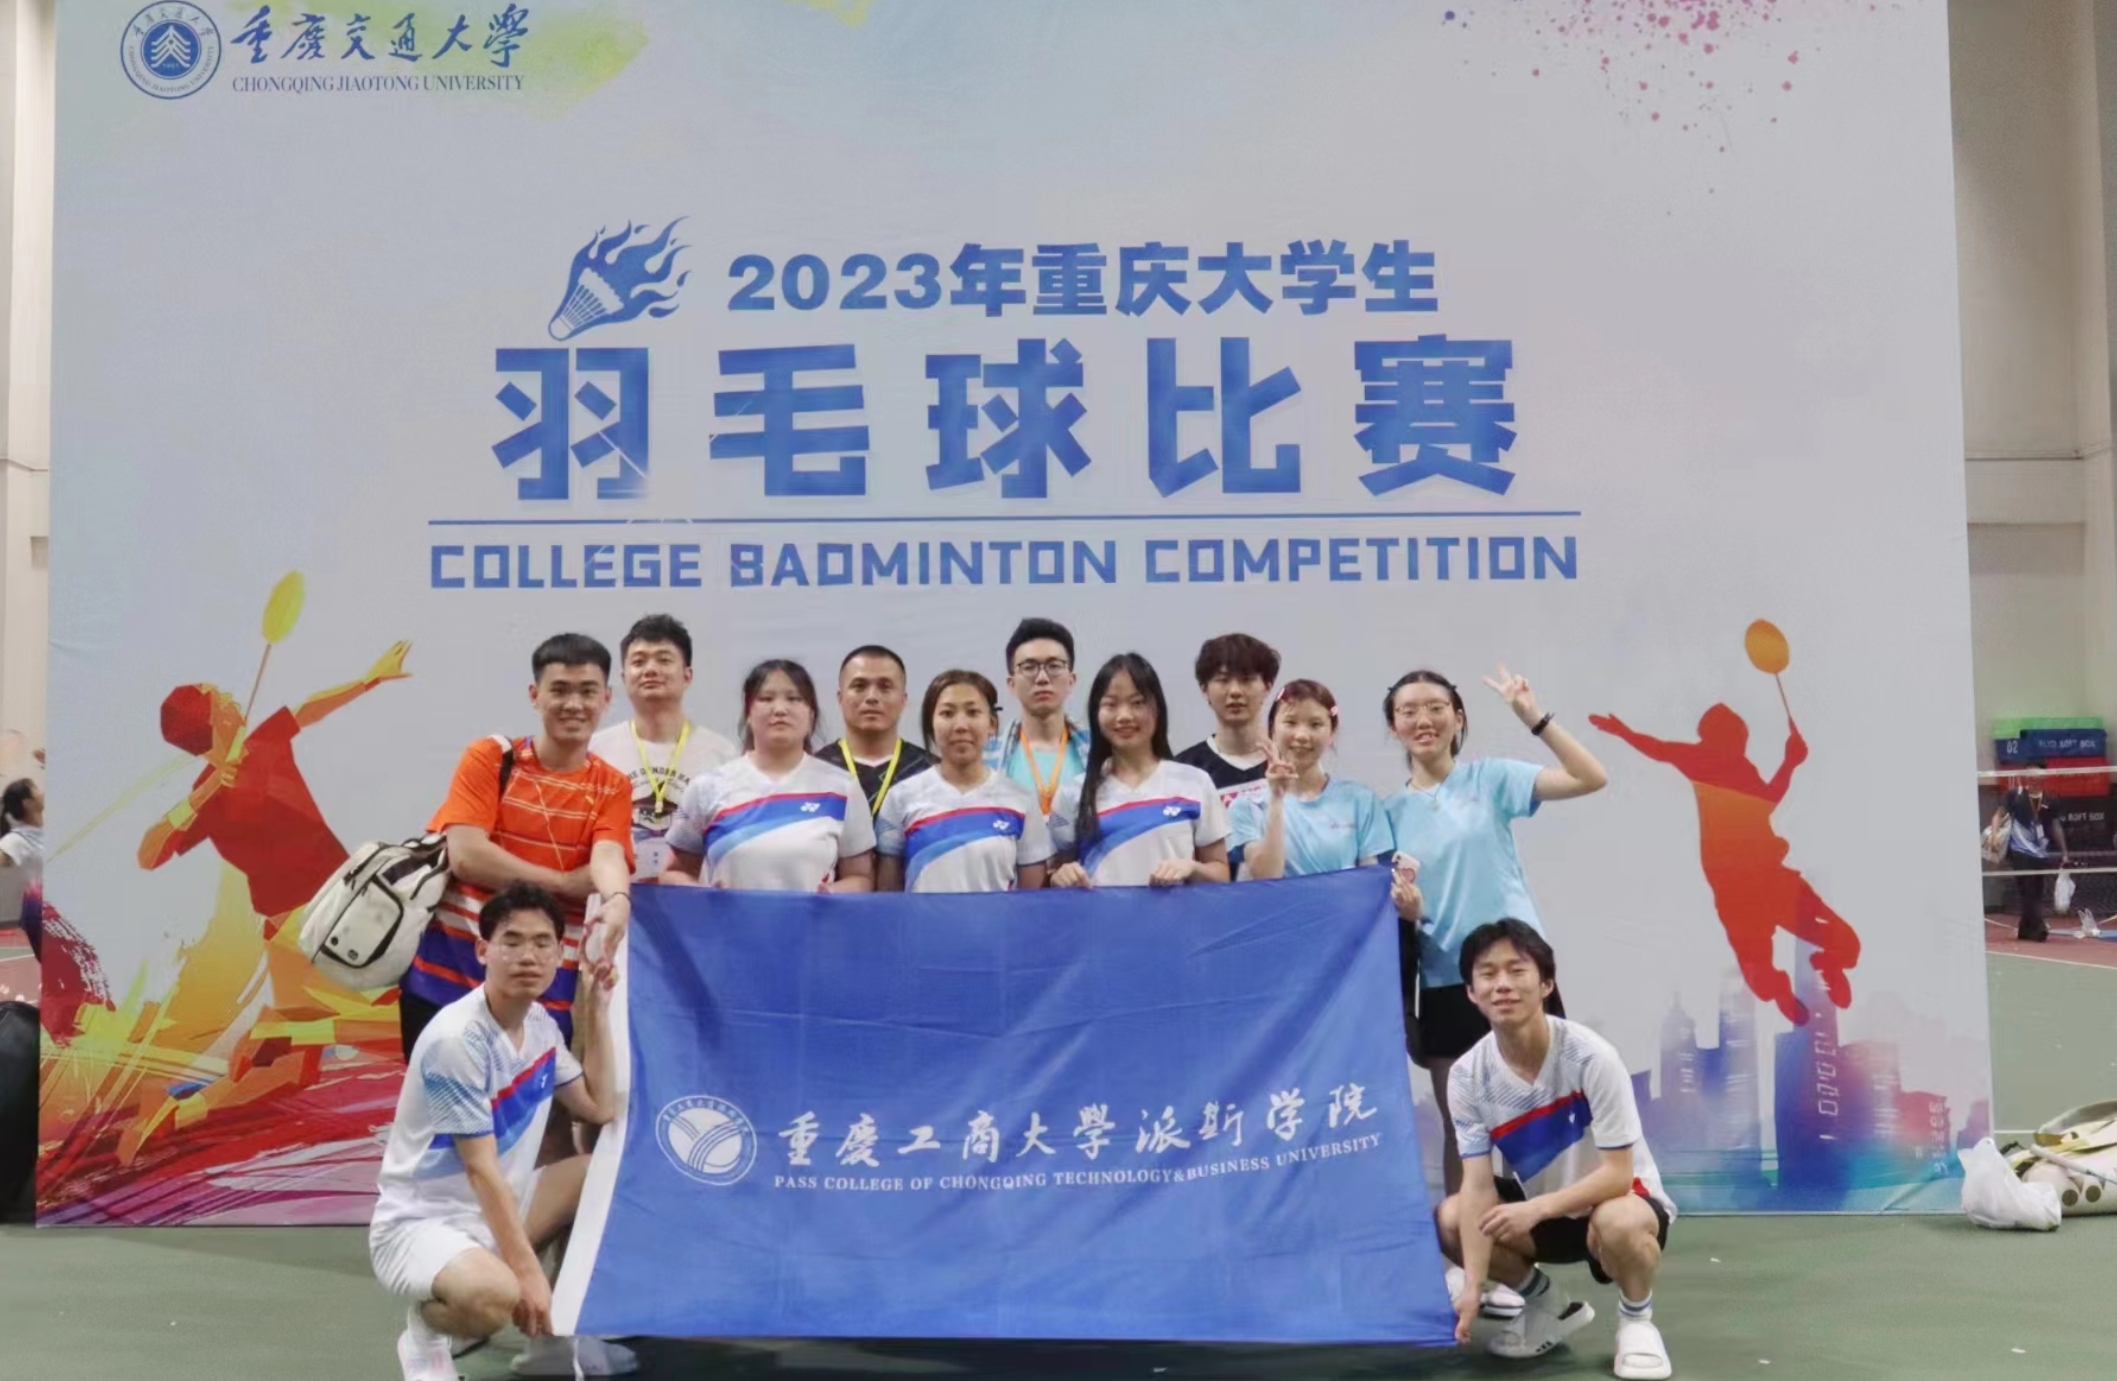 【喜报】金莎娱乐官网最全网站羽毛球队在2023年重庆市大学生羽毛球比赛中获奖